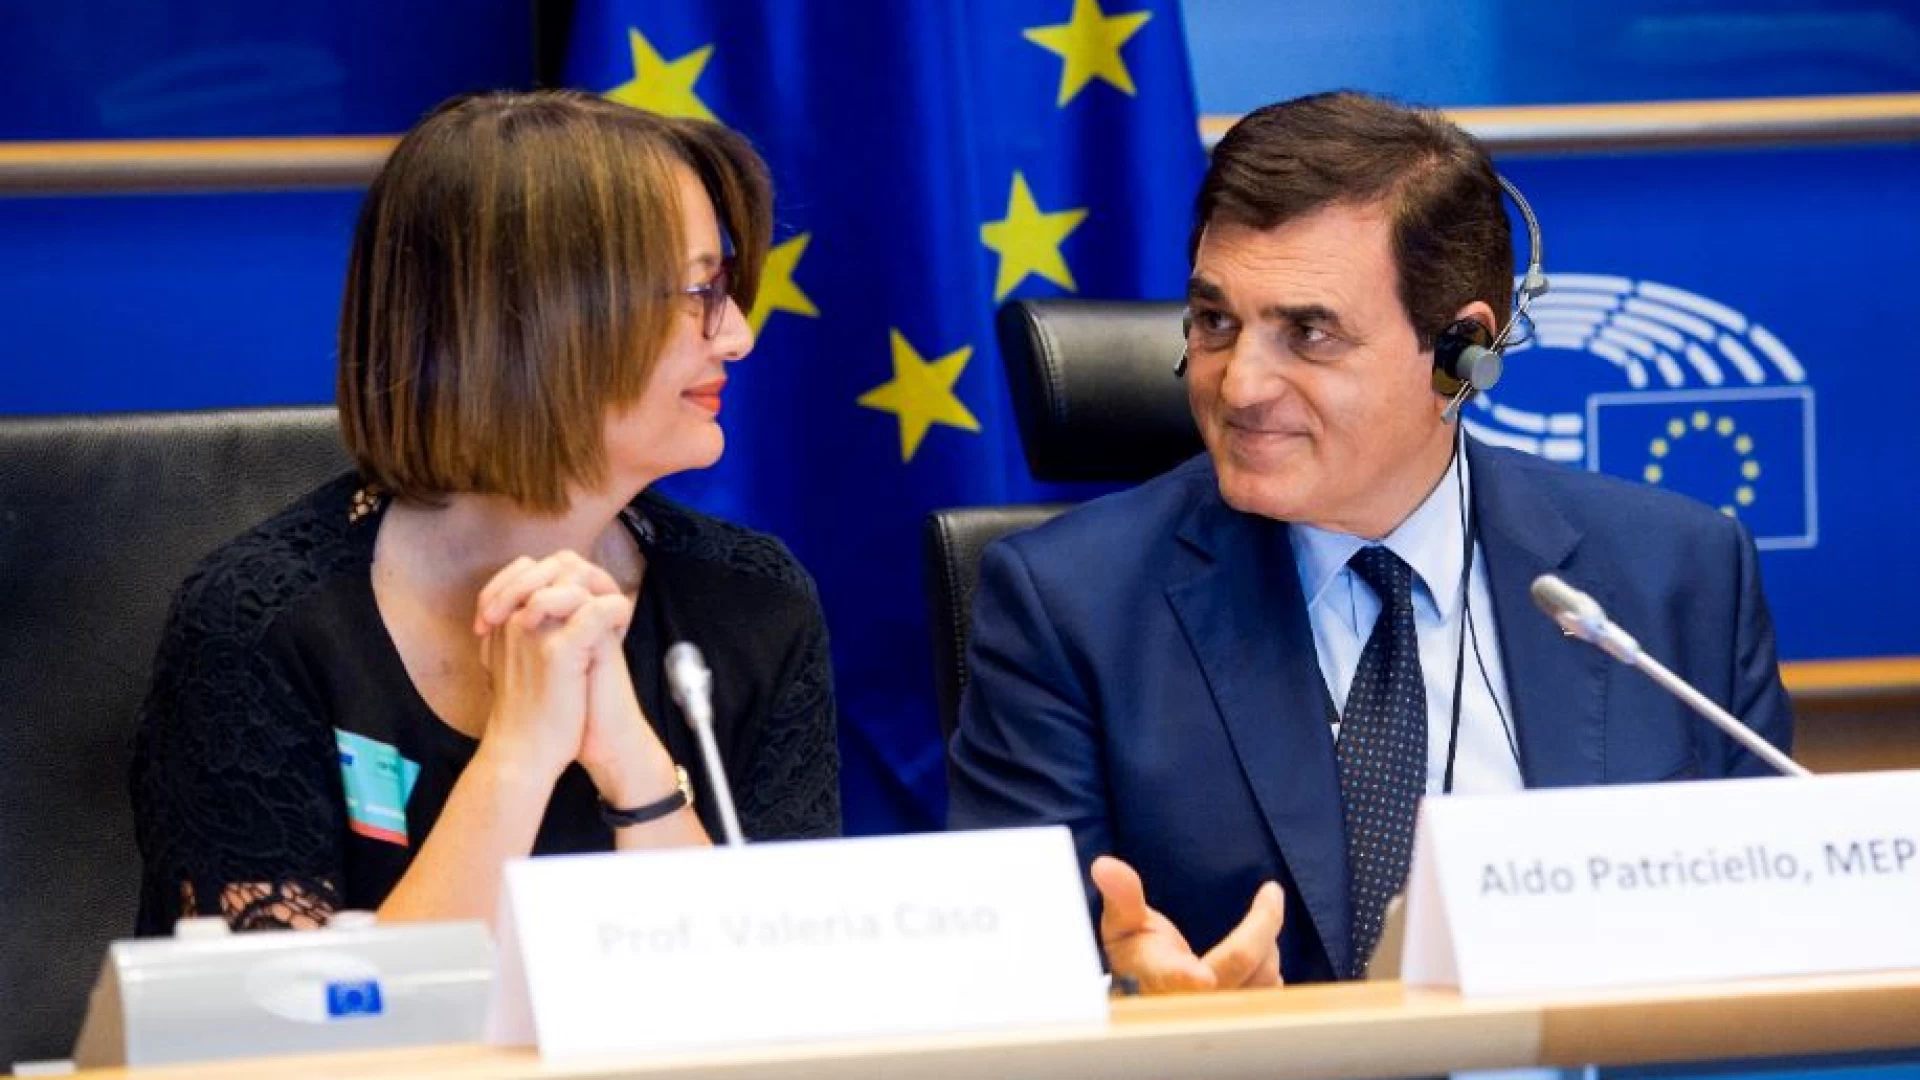 Parlamento Europeo, Roberta Metsola presidente. Patriciello: “Figura autorevole”.